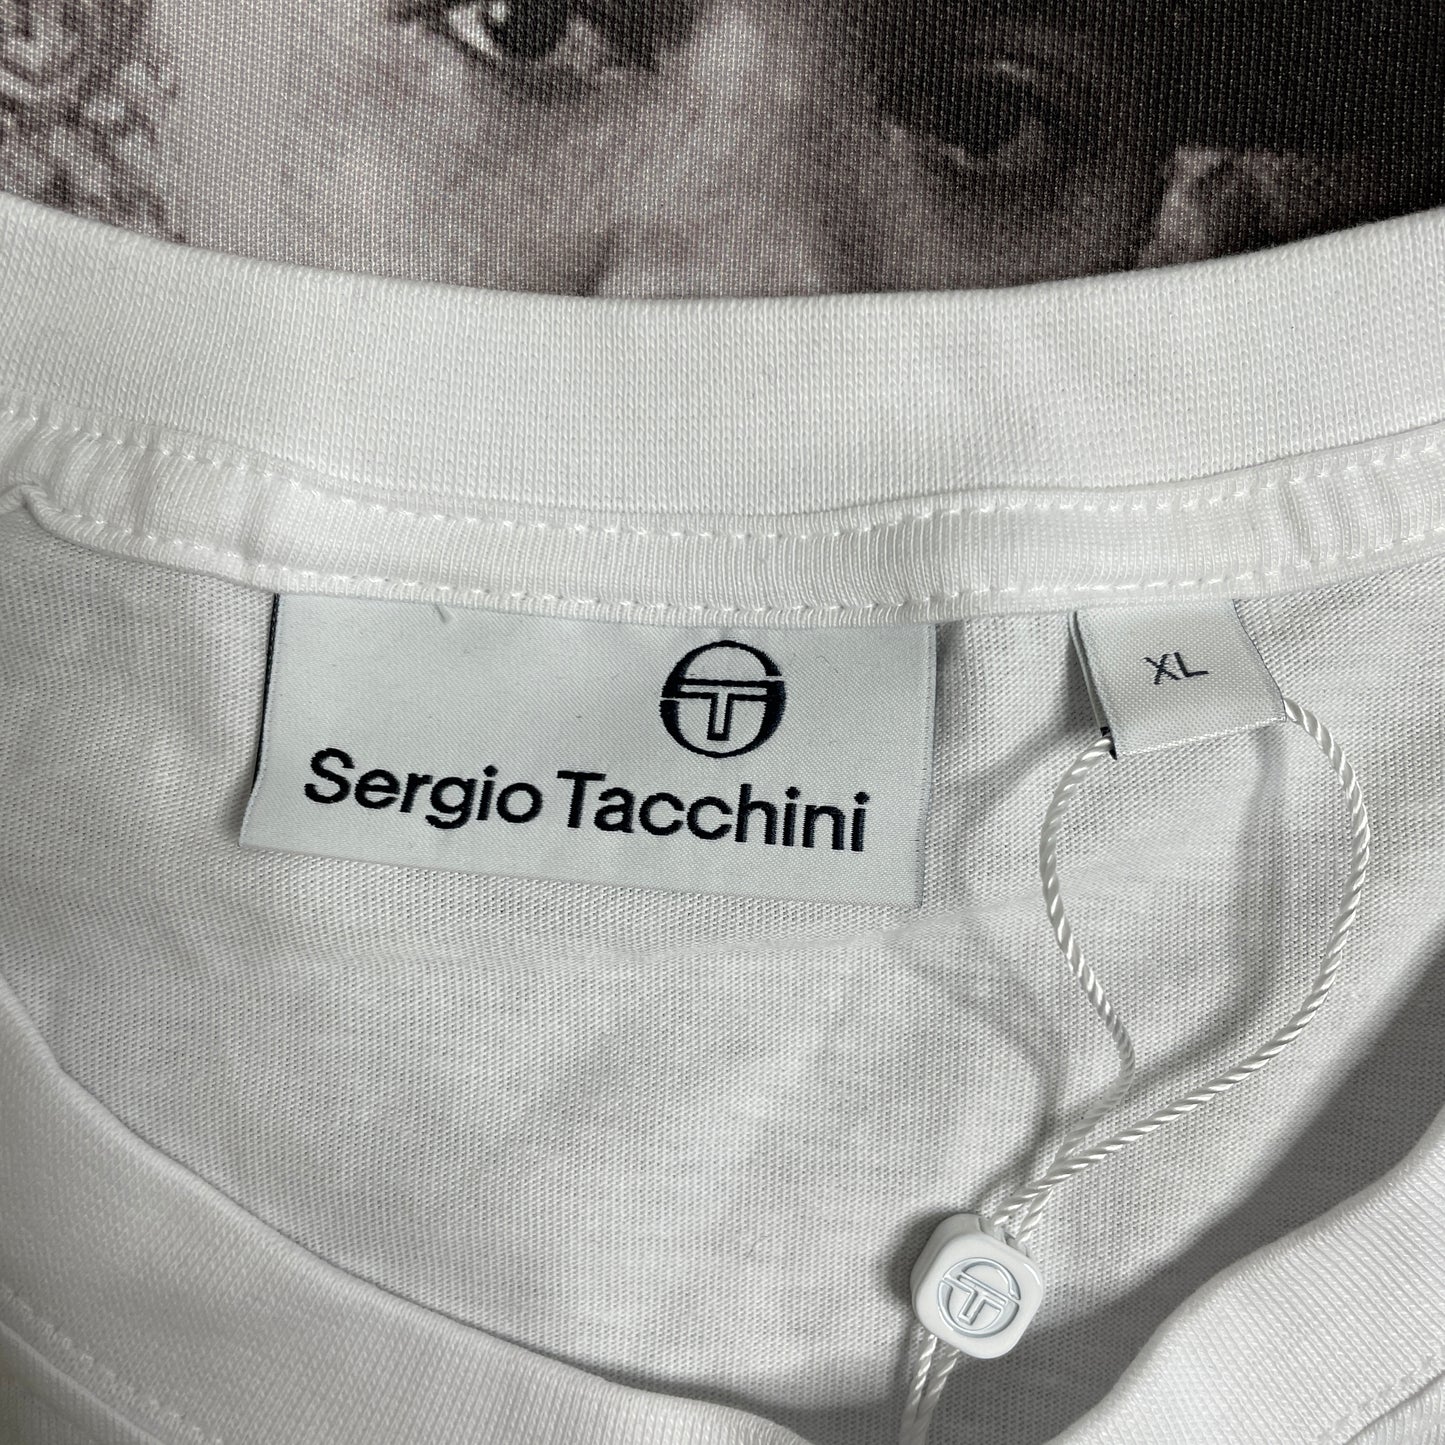 Serigio Tacchini Tabellone Tee White STS23M50539